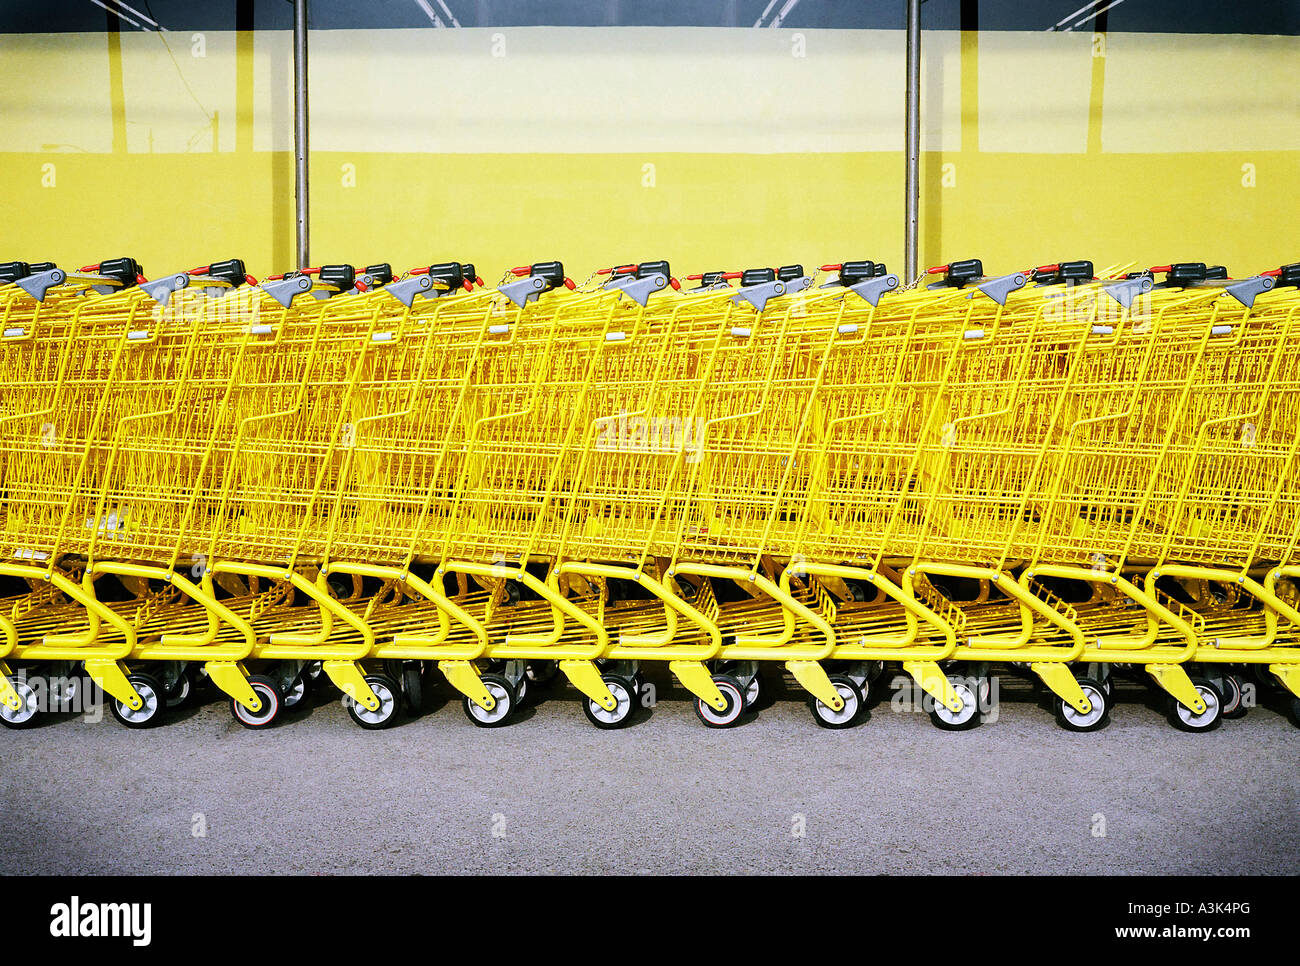 Fila de amarillo Shopping Carts Fotografía de stock - Alamy